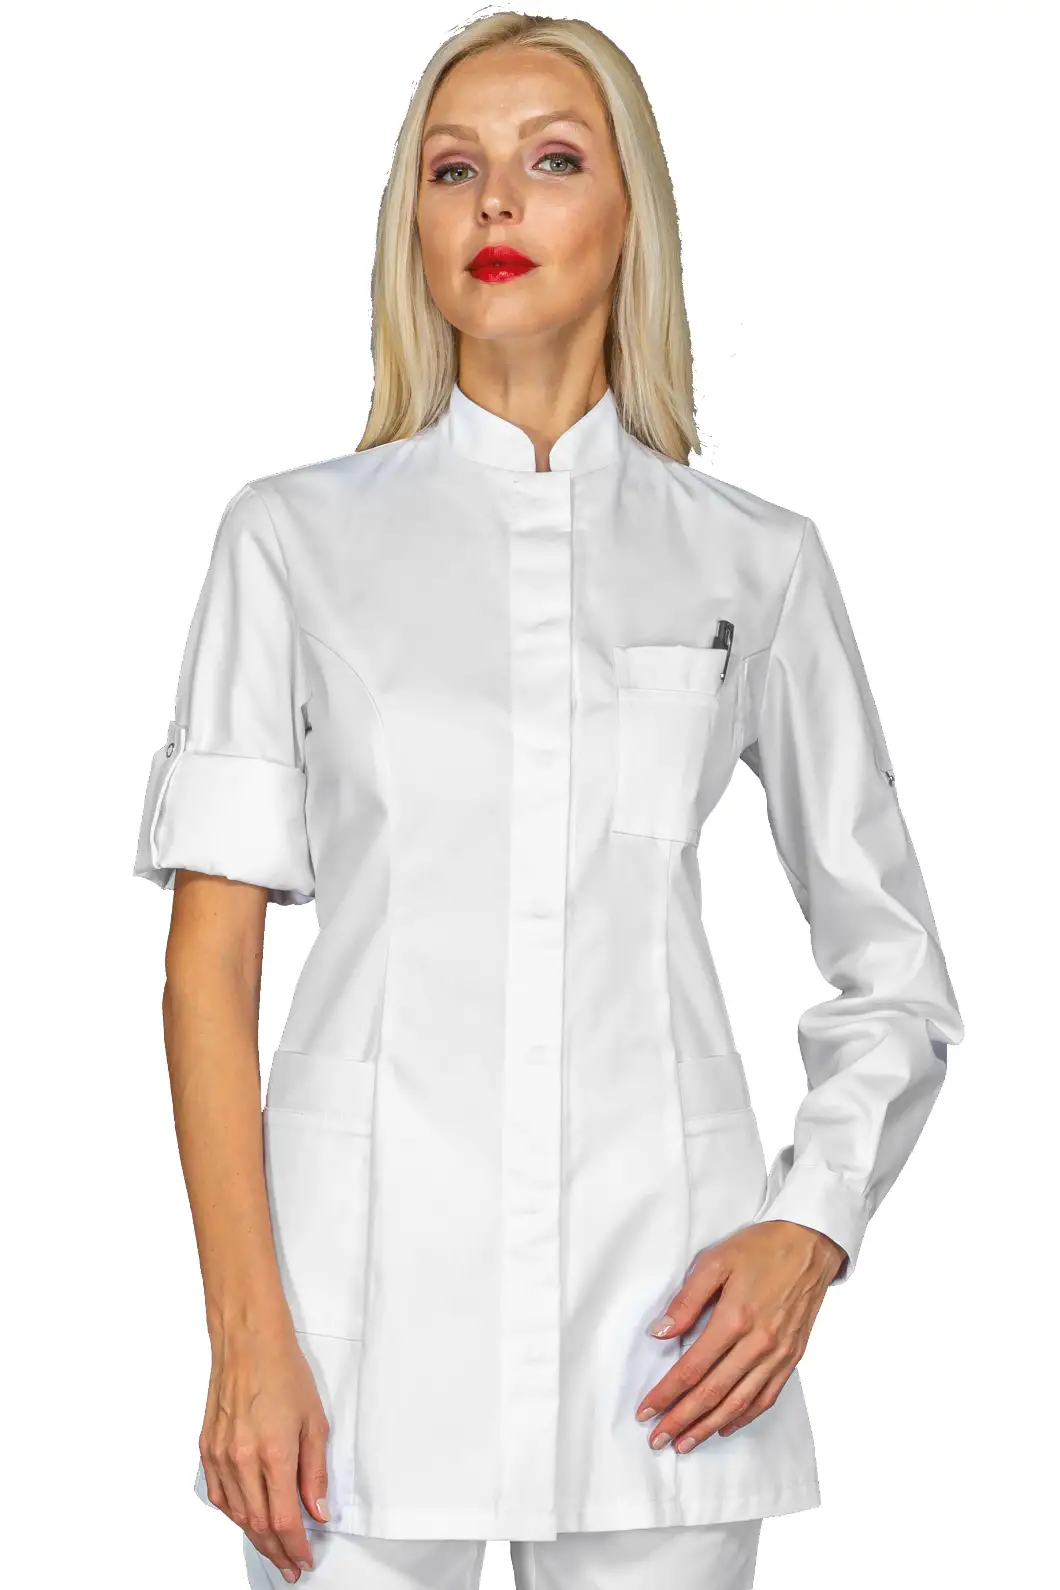 Camice Bianco Donna Collo Coreana Personalizzato Isacco